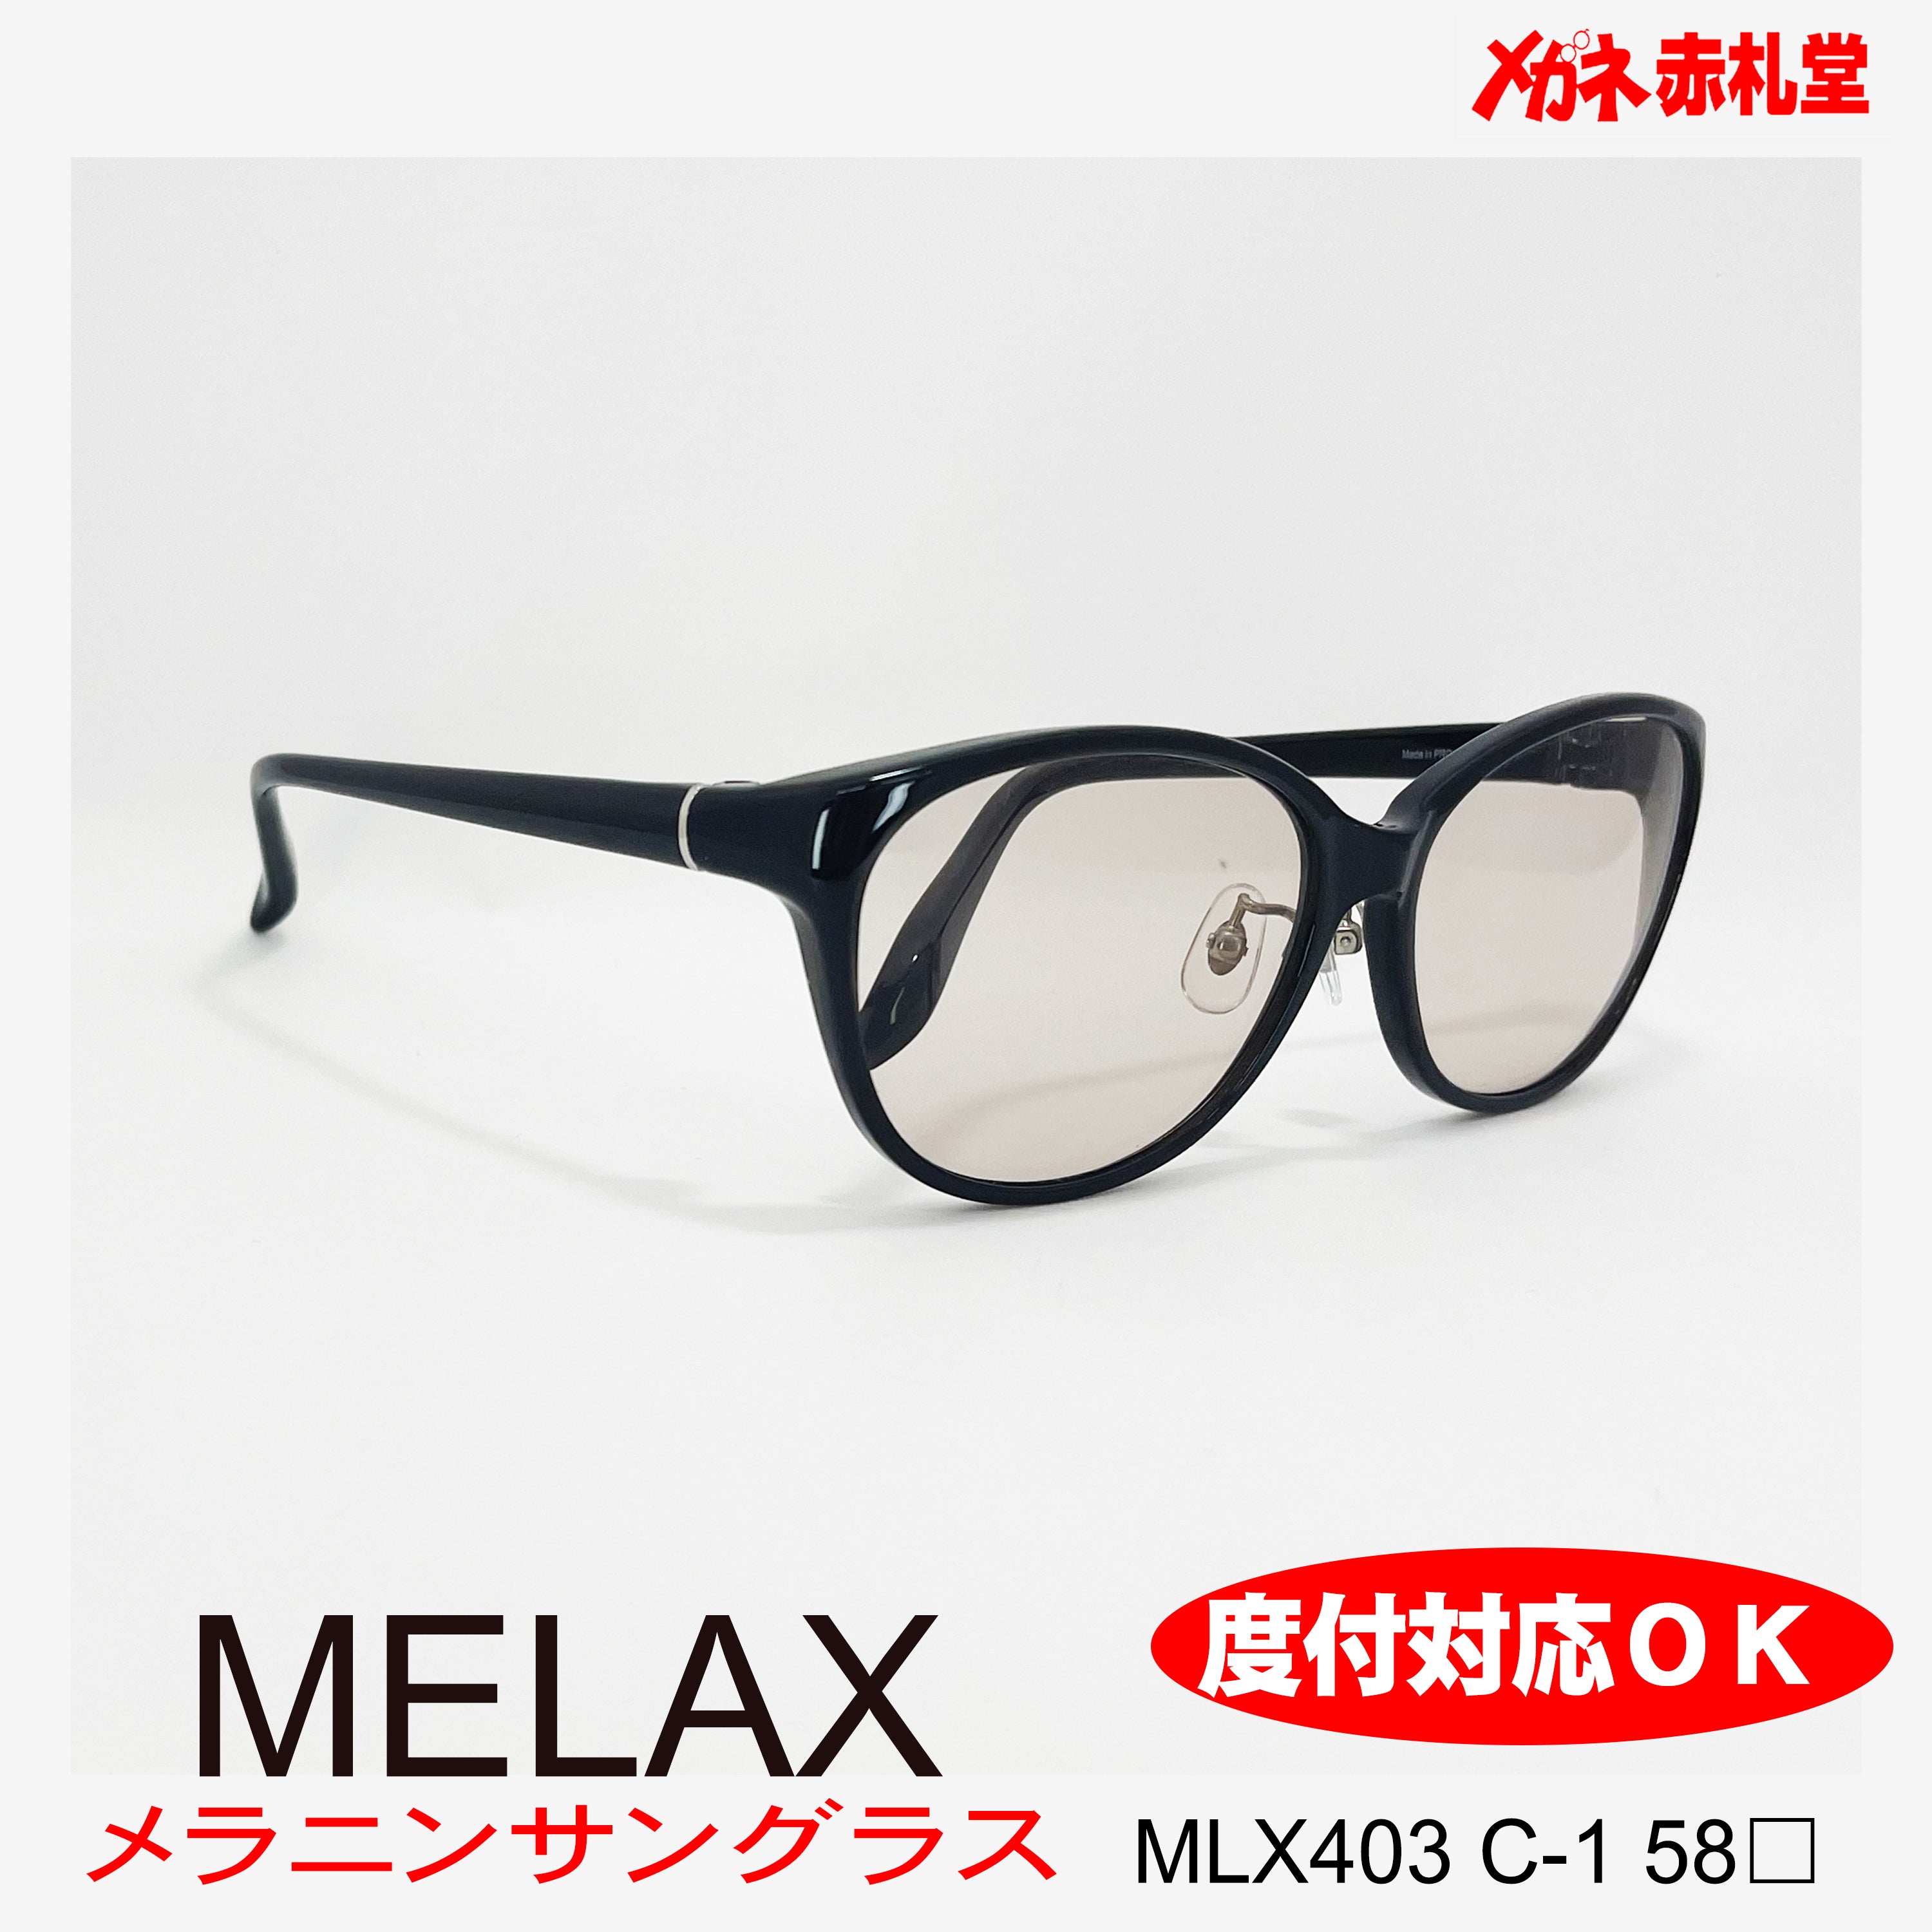 3800円 メラニンサングラス MLX403 58サイズ 1カラー – メガネ赤札堂 ONLINESHOP